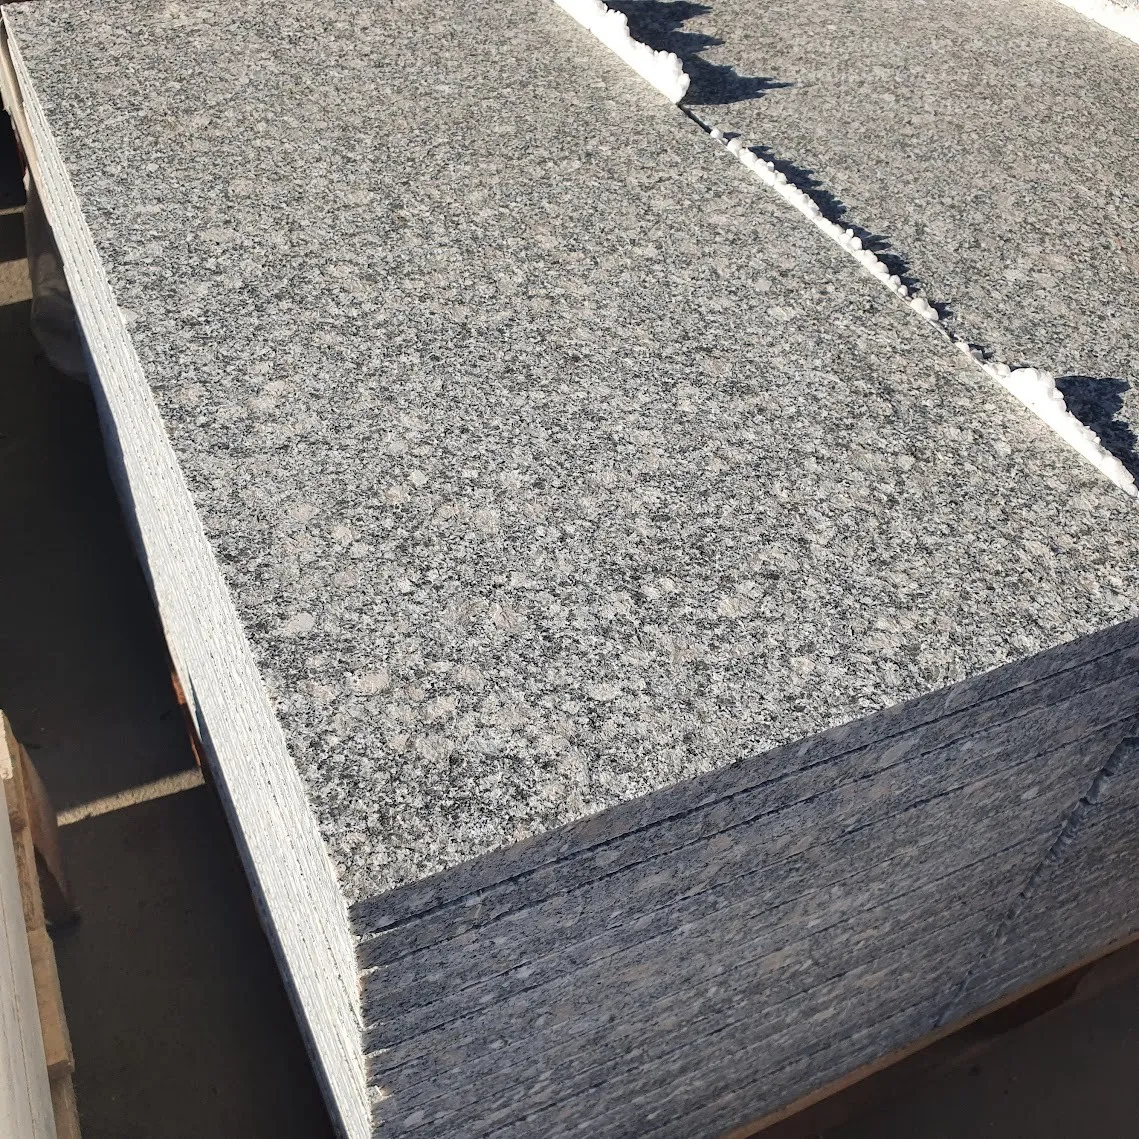 Tropic 60x30x1.8 cm | Flamed granite tiles  2